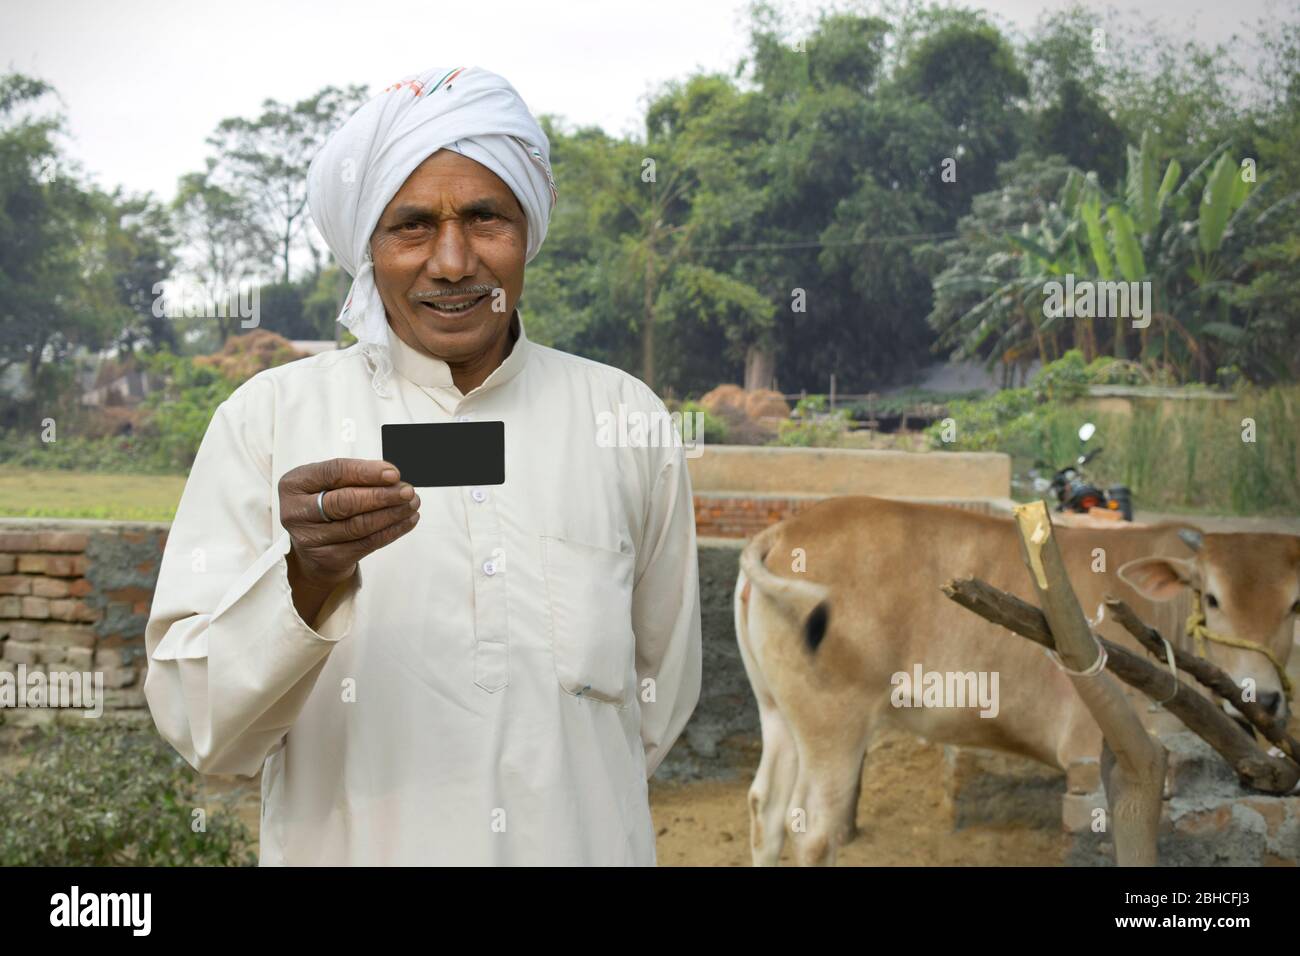 Portrait de la carte de retenue de fermier indien Banque D'Images